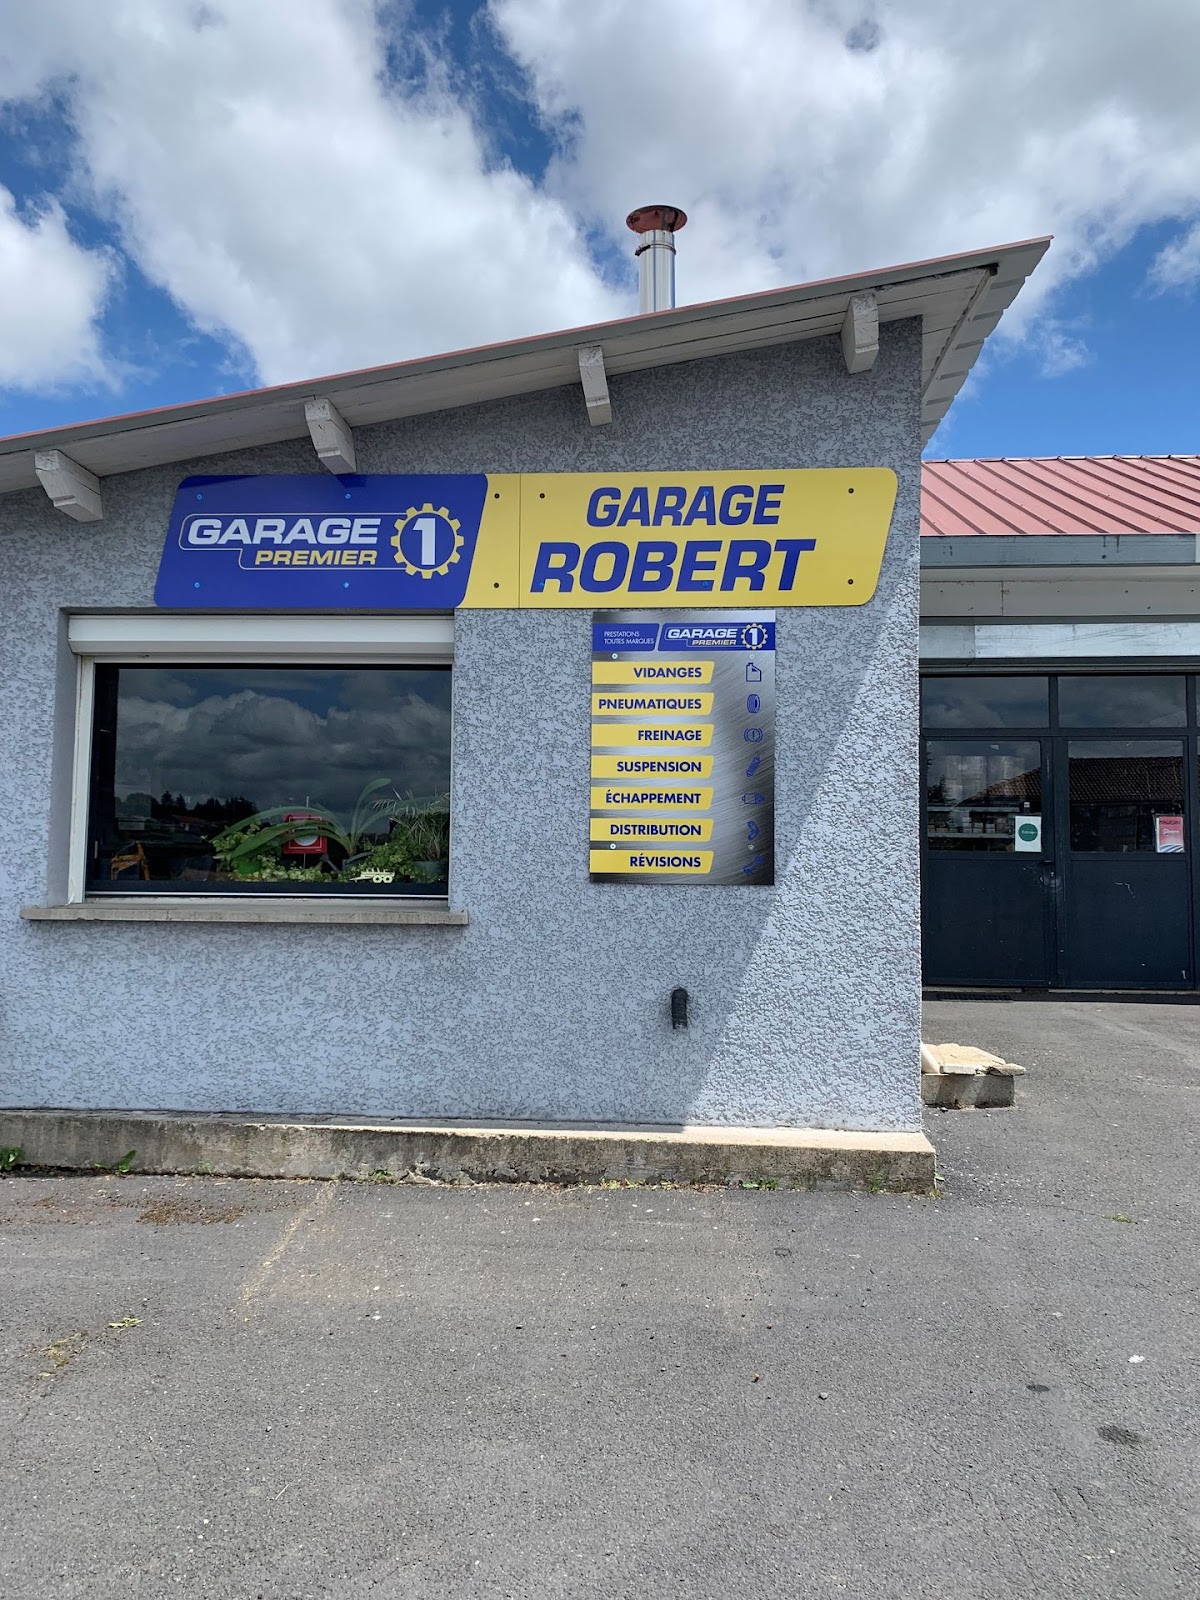 GARAGE PREMIER - GARAGE ROBERT